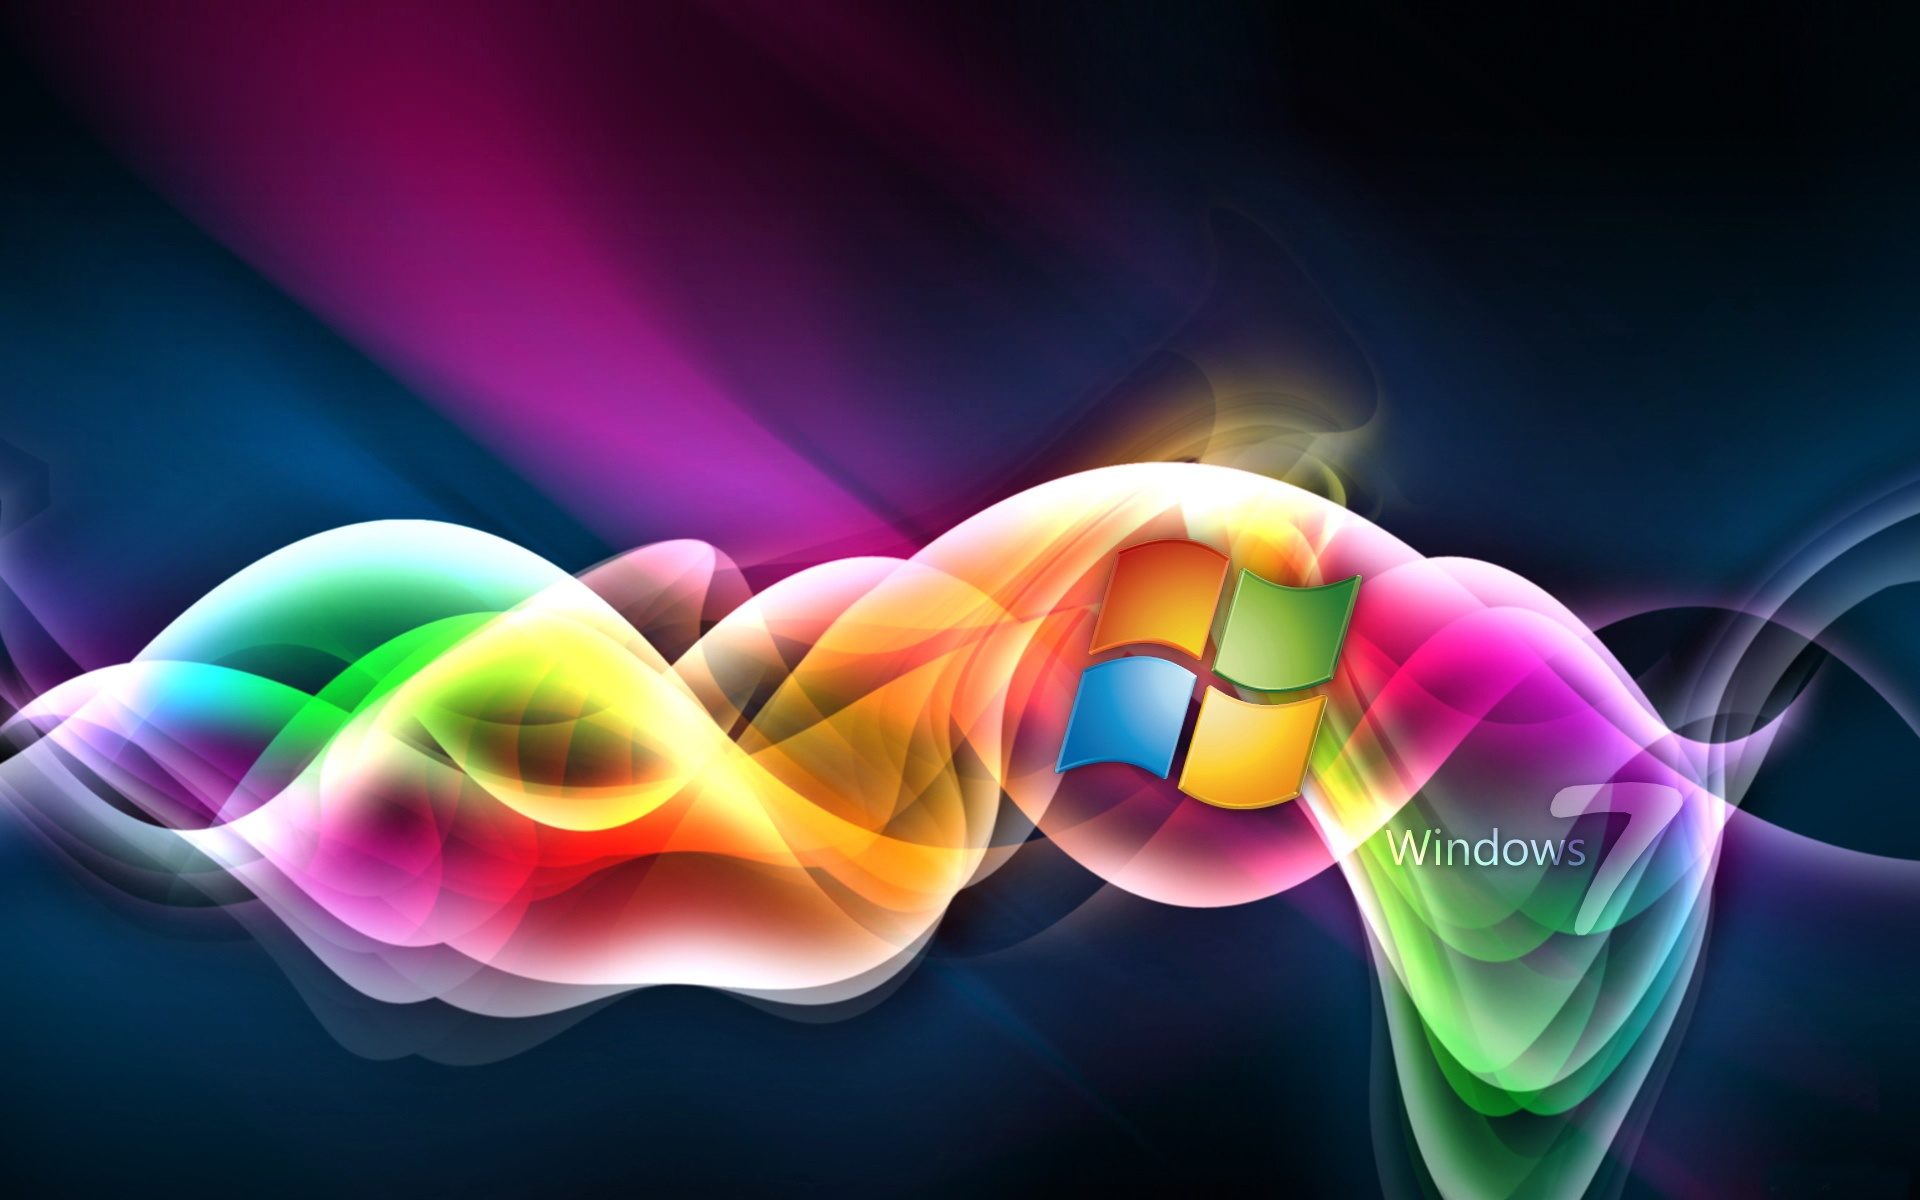 Windows 7 in colors wallpaper, Wallpaper13.com